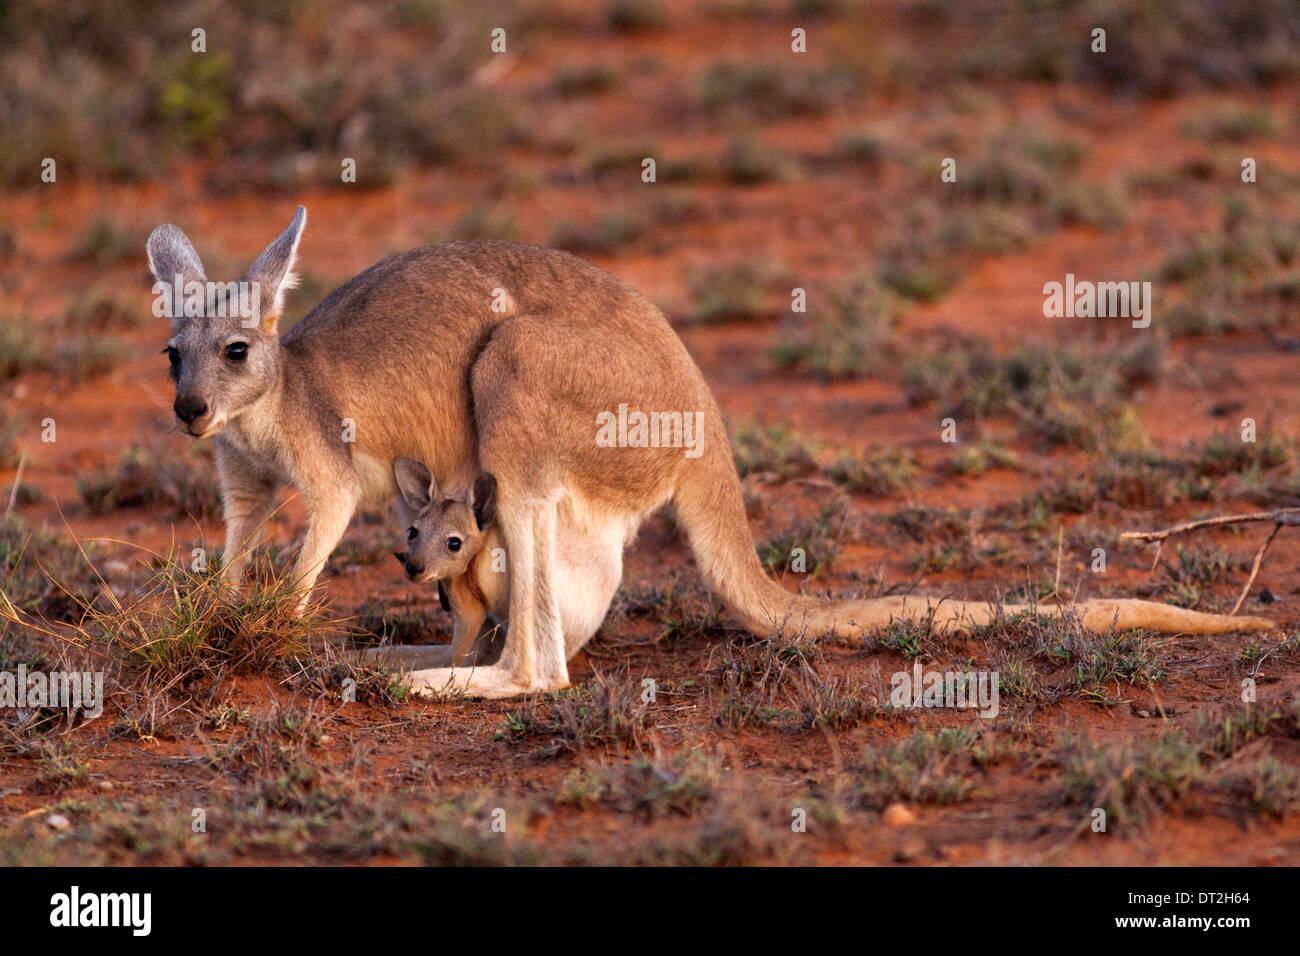 Kangourou avec Joey en sachet, Cape Range National Park, Exmouth Australie Occidentale Banque D'Images